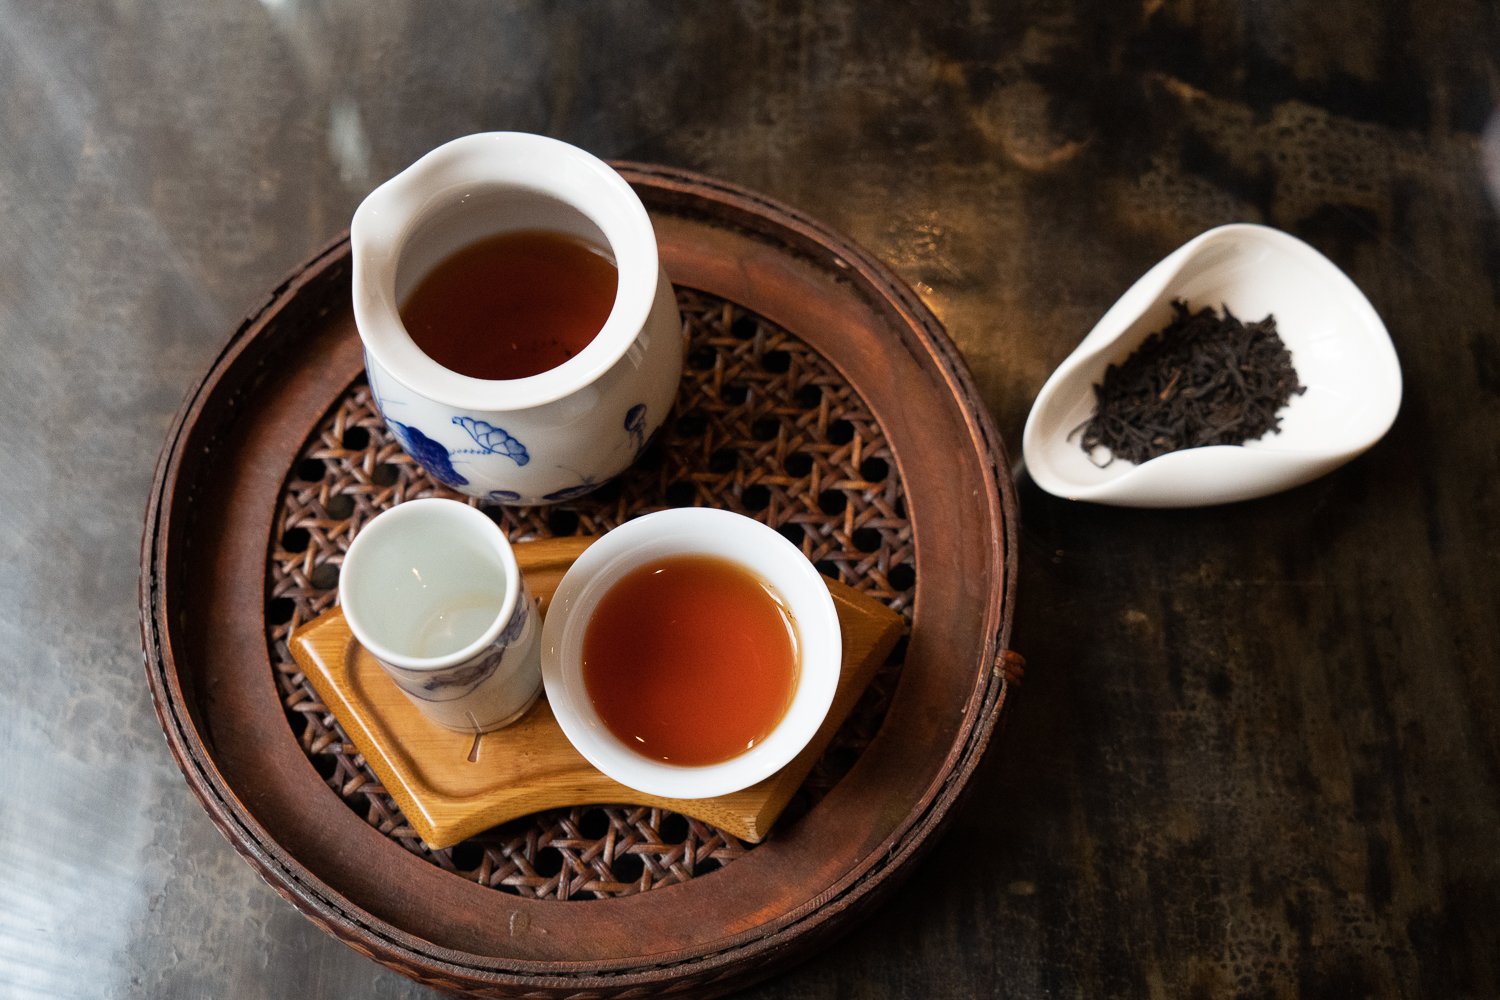 日本で生産されている紅茶、和紅茶も台湾の方式で提供される。1000円。